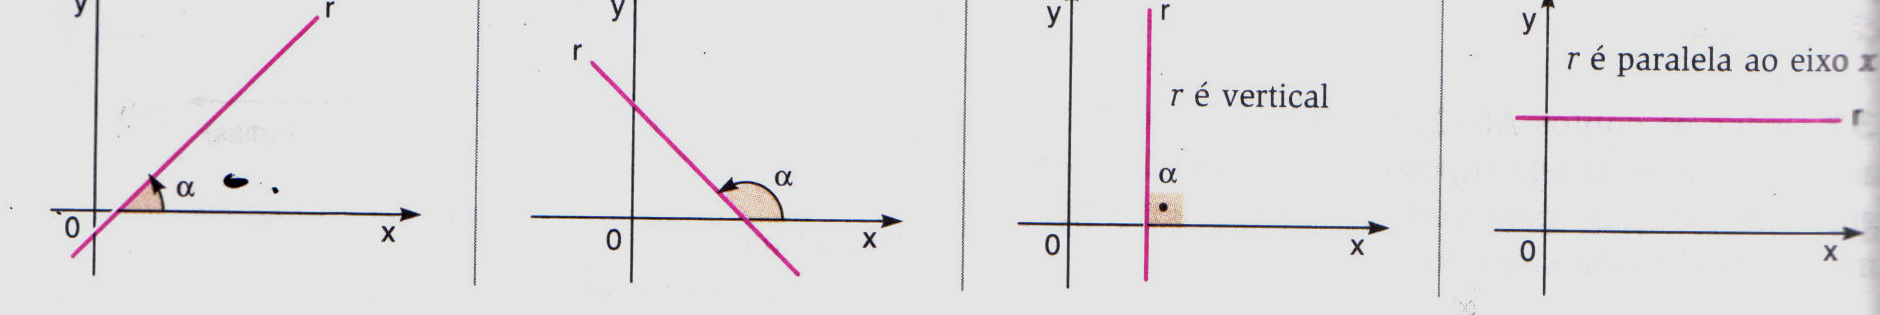 Inclinação e coeficiente angular de uma reta: A figura a seguir mostra uma reta r não paralela ao eixo y. Seja α o ângulo que a reta forma com o eixo x, medido do eixo para r no sentido anti-horário.